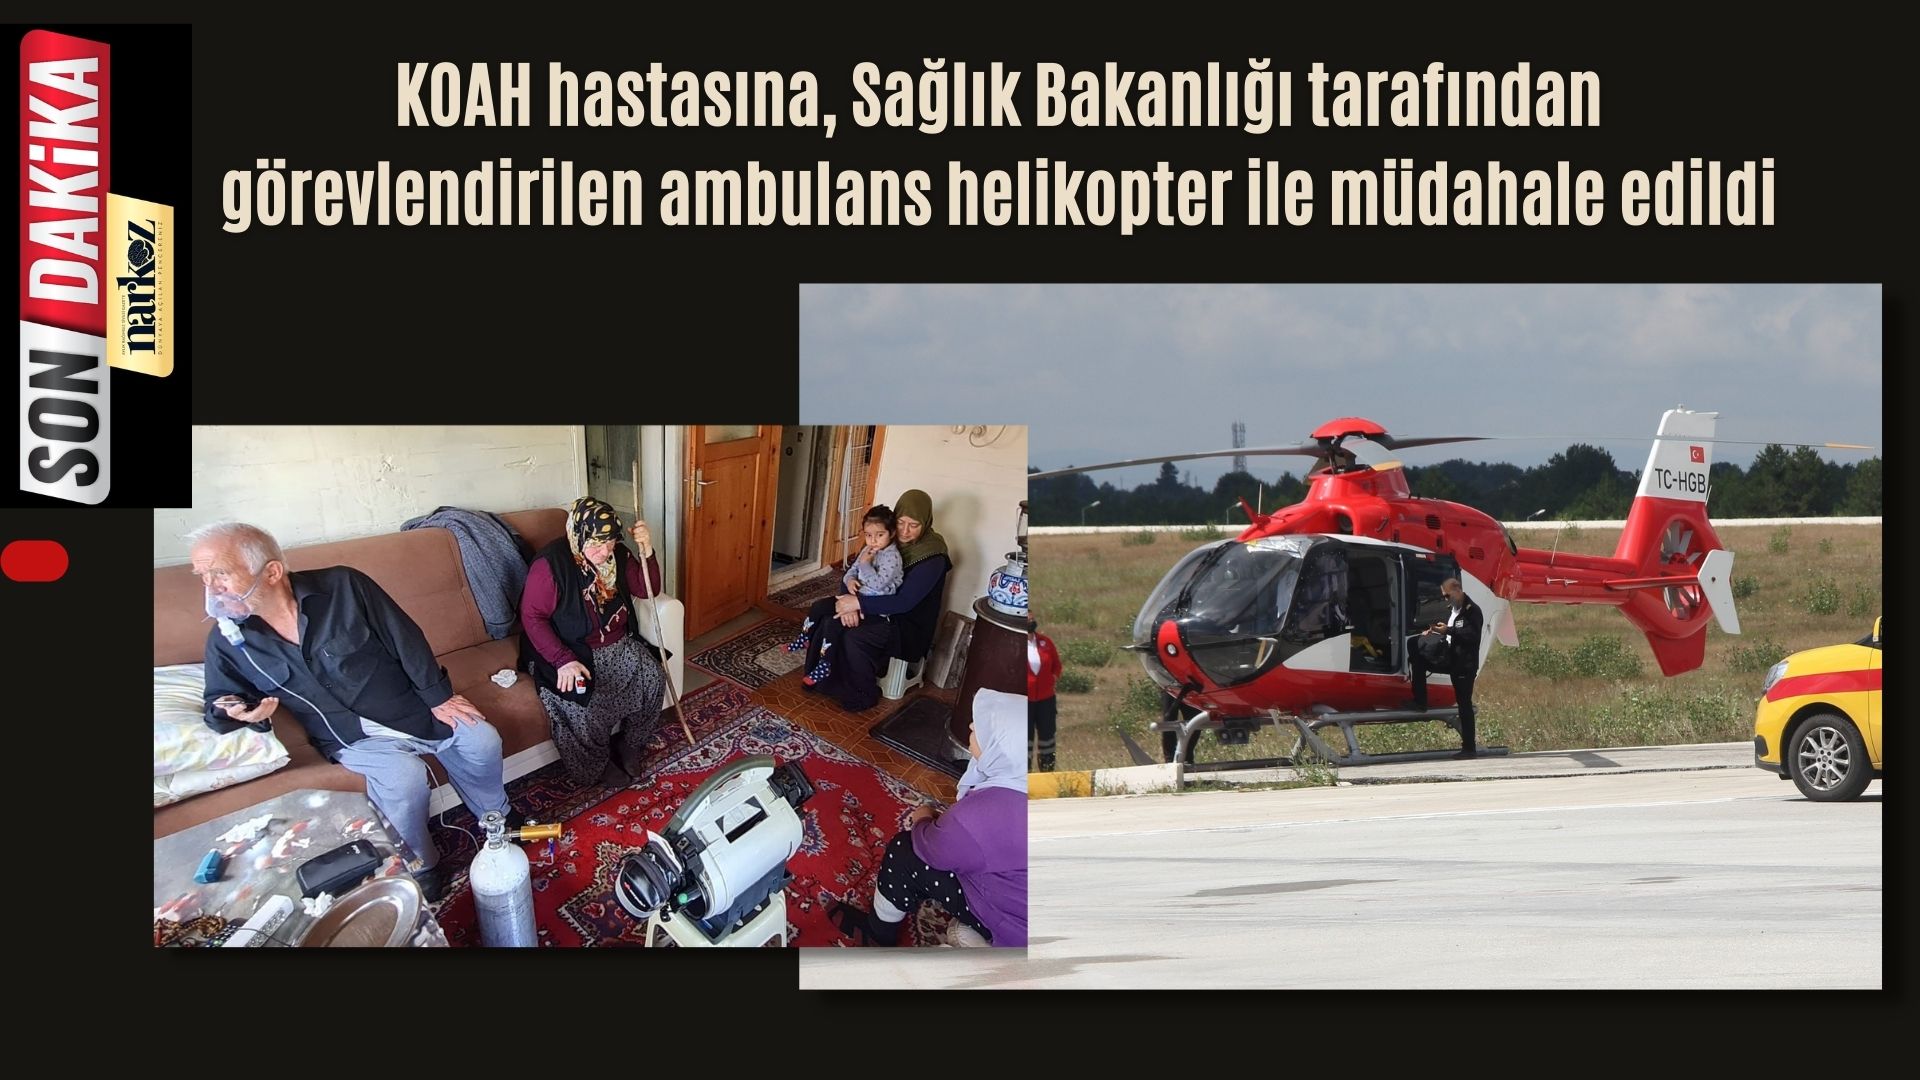 KOAH Hastasına ambulans helikopter ile müdahale edildi